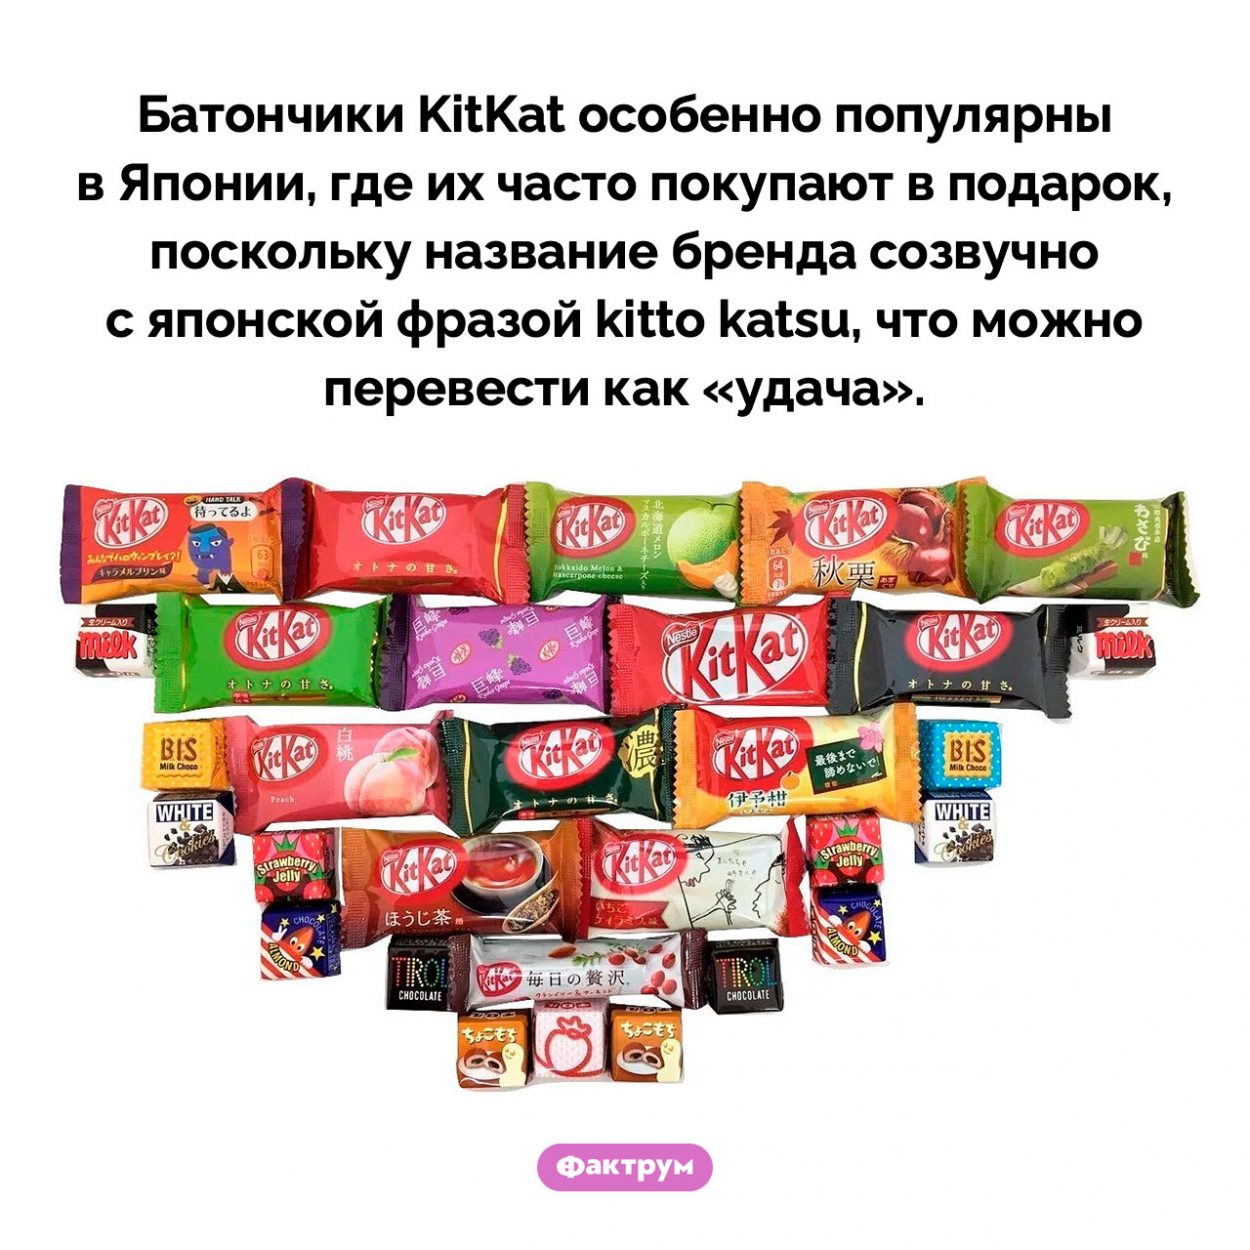 Почему батончики KitKat популярны в Японии. Батончики KitKat особенно популярны в Японии, где их часто покупают в подарок, поскольку название бренда созвучно с японской фразой kitto katsu, что можно перевести как «удача».